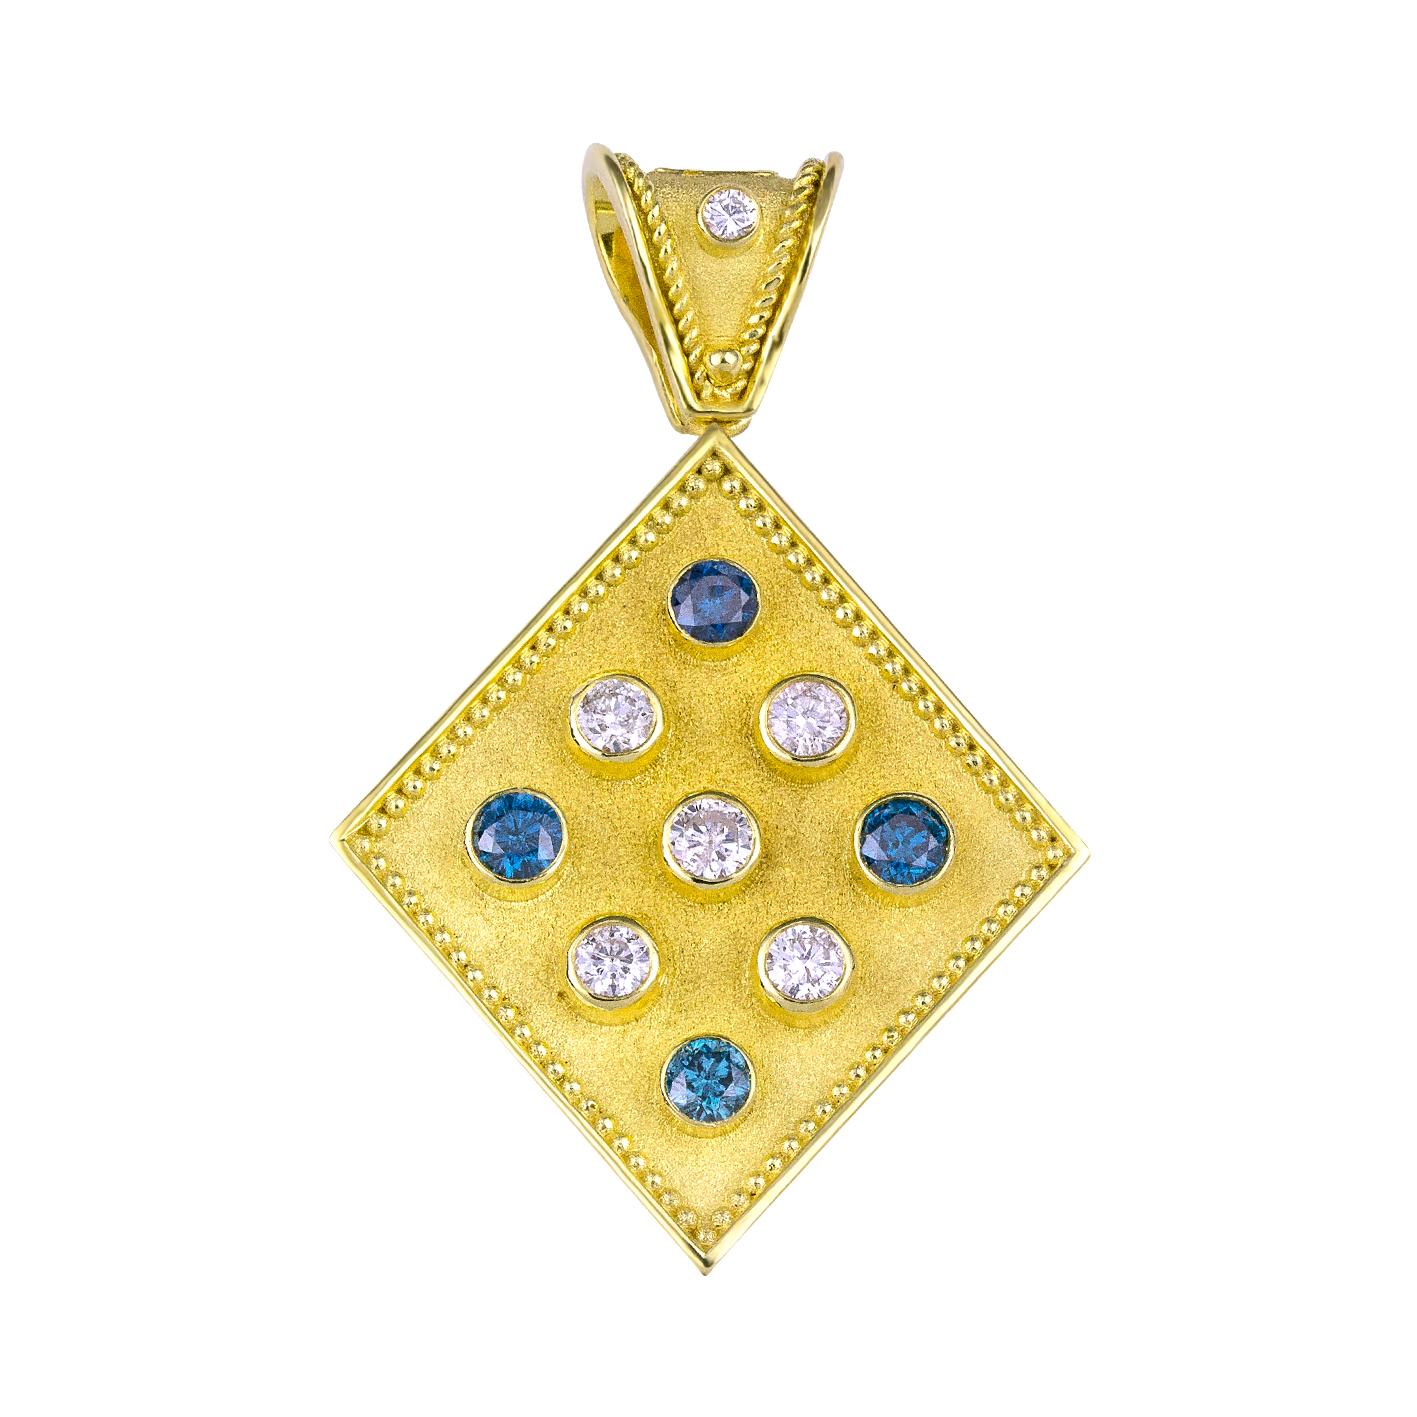 Le pendentif enhancer de S.Georgios est entièrement fabriqué à la main en or jaune et blanc 18 carats sur mesure. Il est décoré au microscope - avec un travail de granulation - des perles et des fils sur les deux côtés. Le fond du pendentif présente